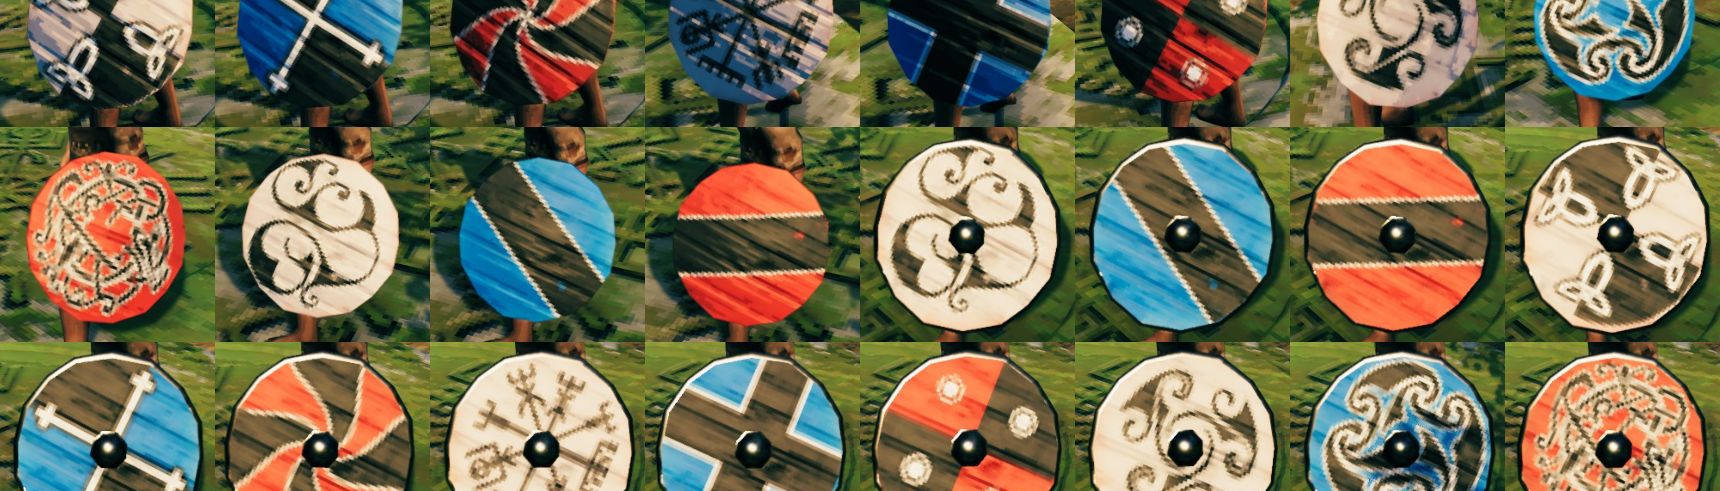 More Round Shield Paints - мод для Valheim который заменяет ванильные краски Wood Shield и Banded Shield на новые. Мод меняет цвета щитов.